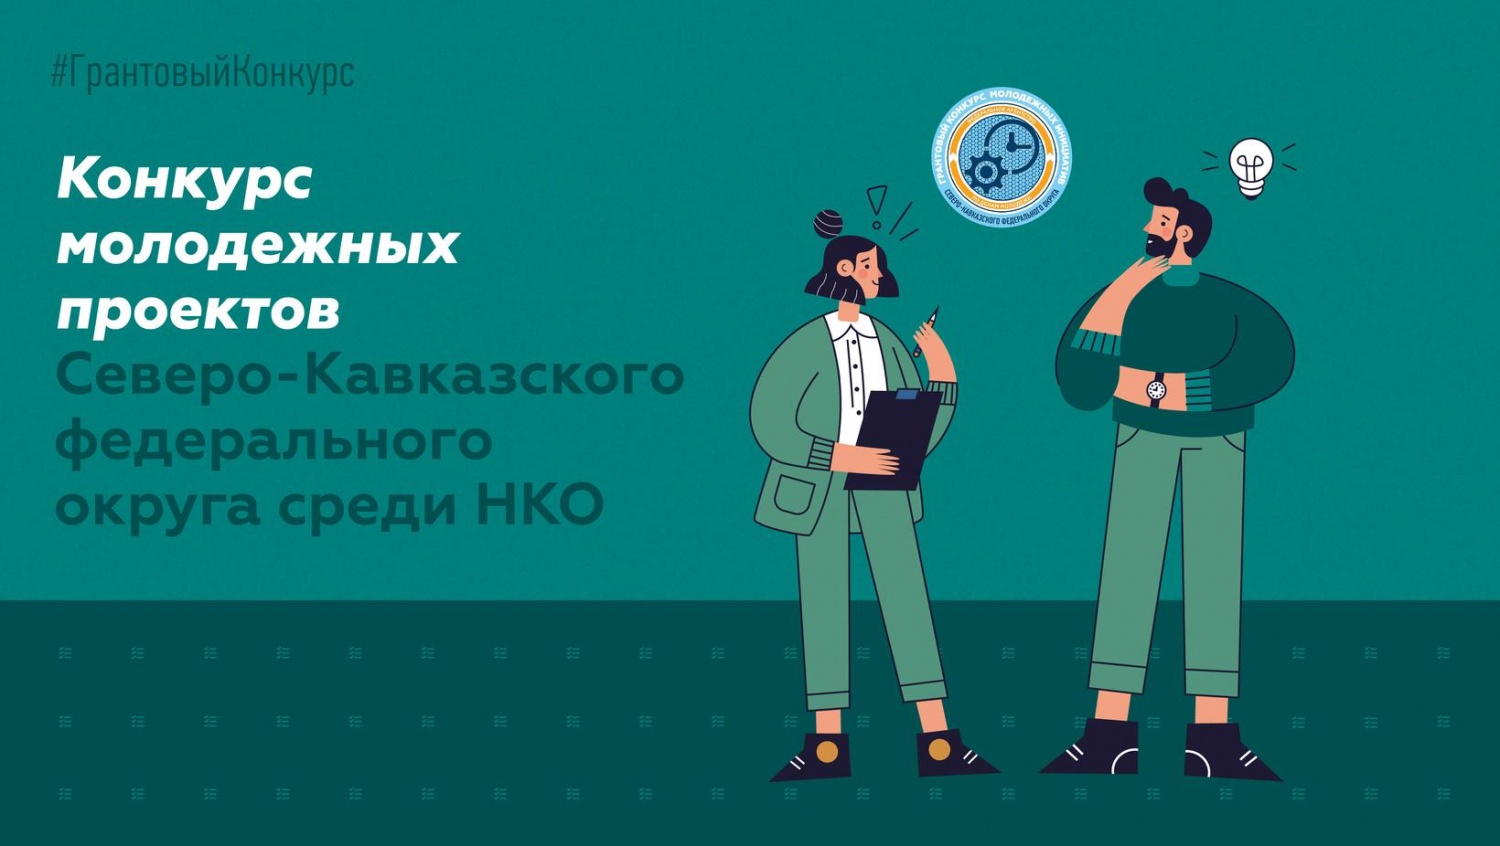 Чеченская республиканская организация РСМ выиграла грант в конкурсе молодежных проектов СКФО 